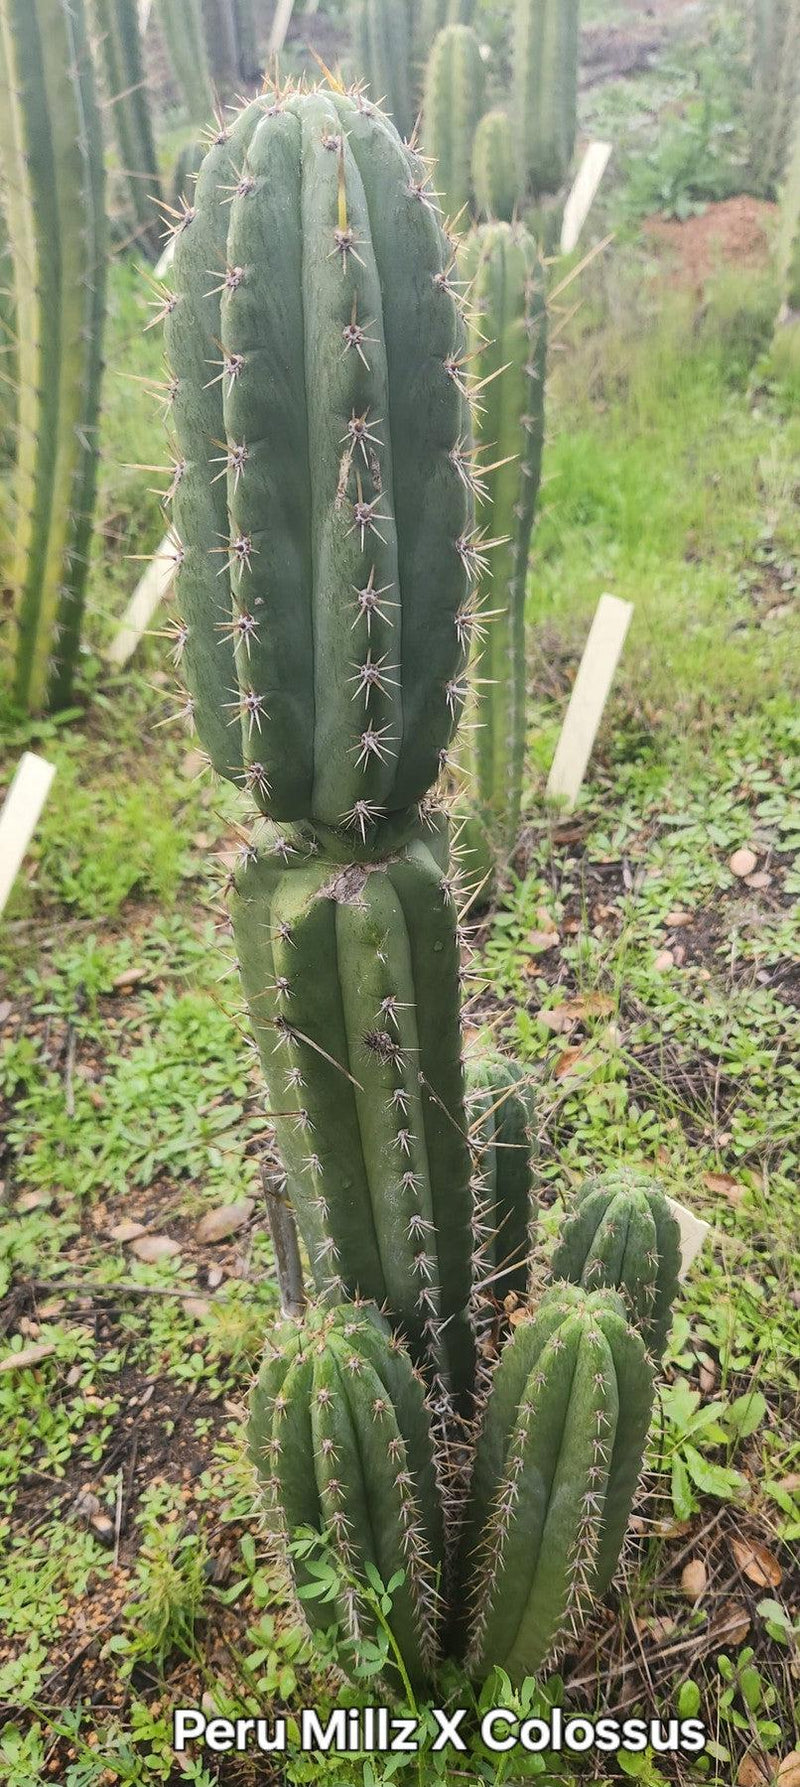 #EC336 EXACT Trichocereus Peruvianus Millz X Colossus Cactus Cutting 8"